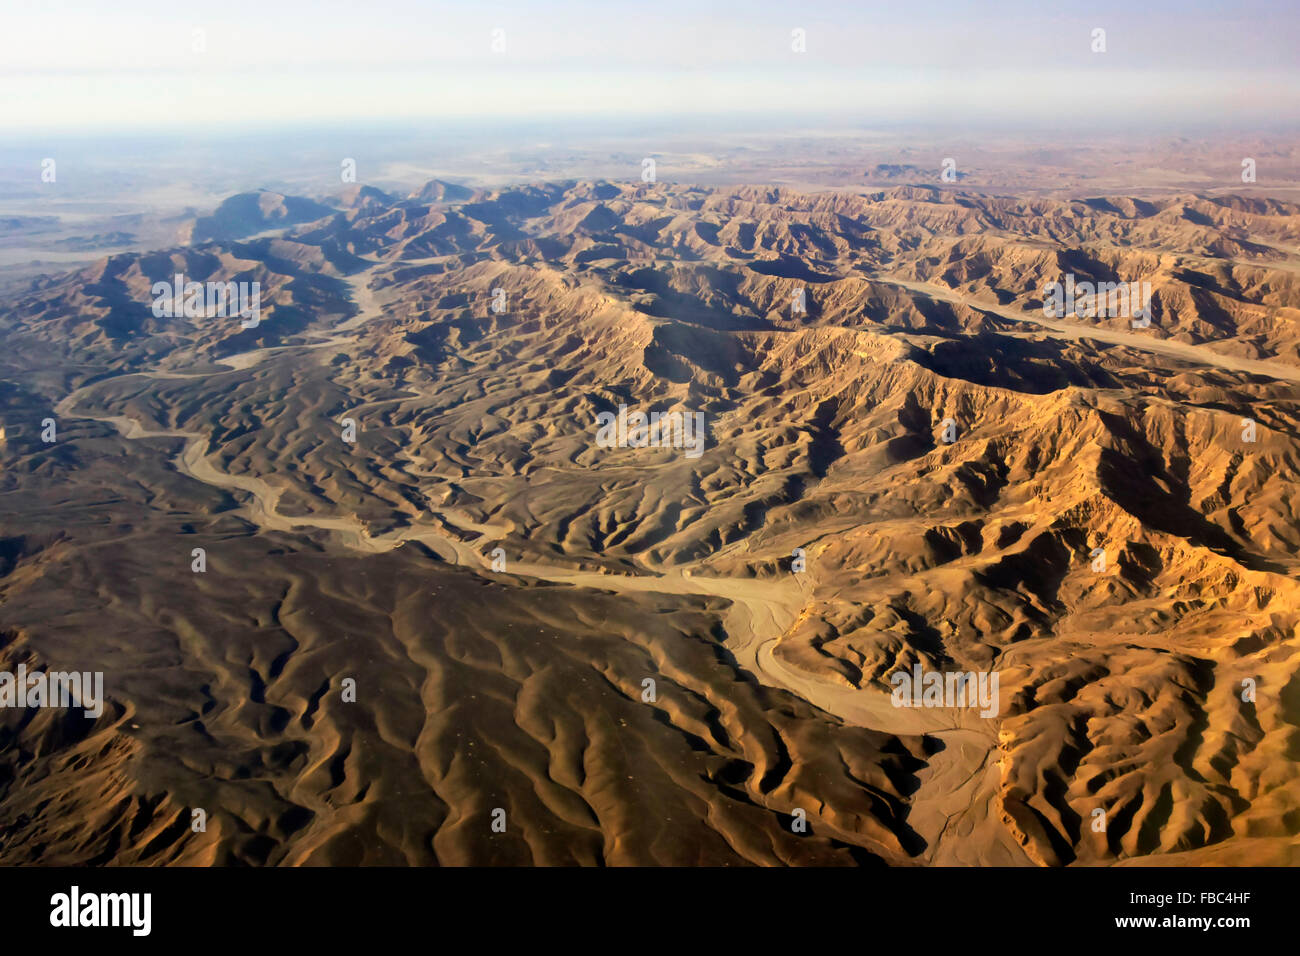 Vue aérienne de la montagne de sable du désert égyptien. Un inextricable labyrinthe de rivières de l'époque, apportant un sentiment de sérénité. Banque D'Images